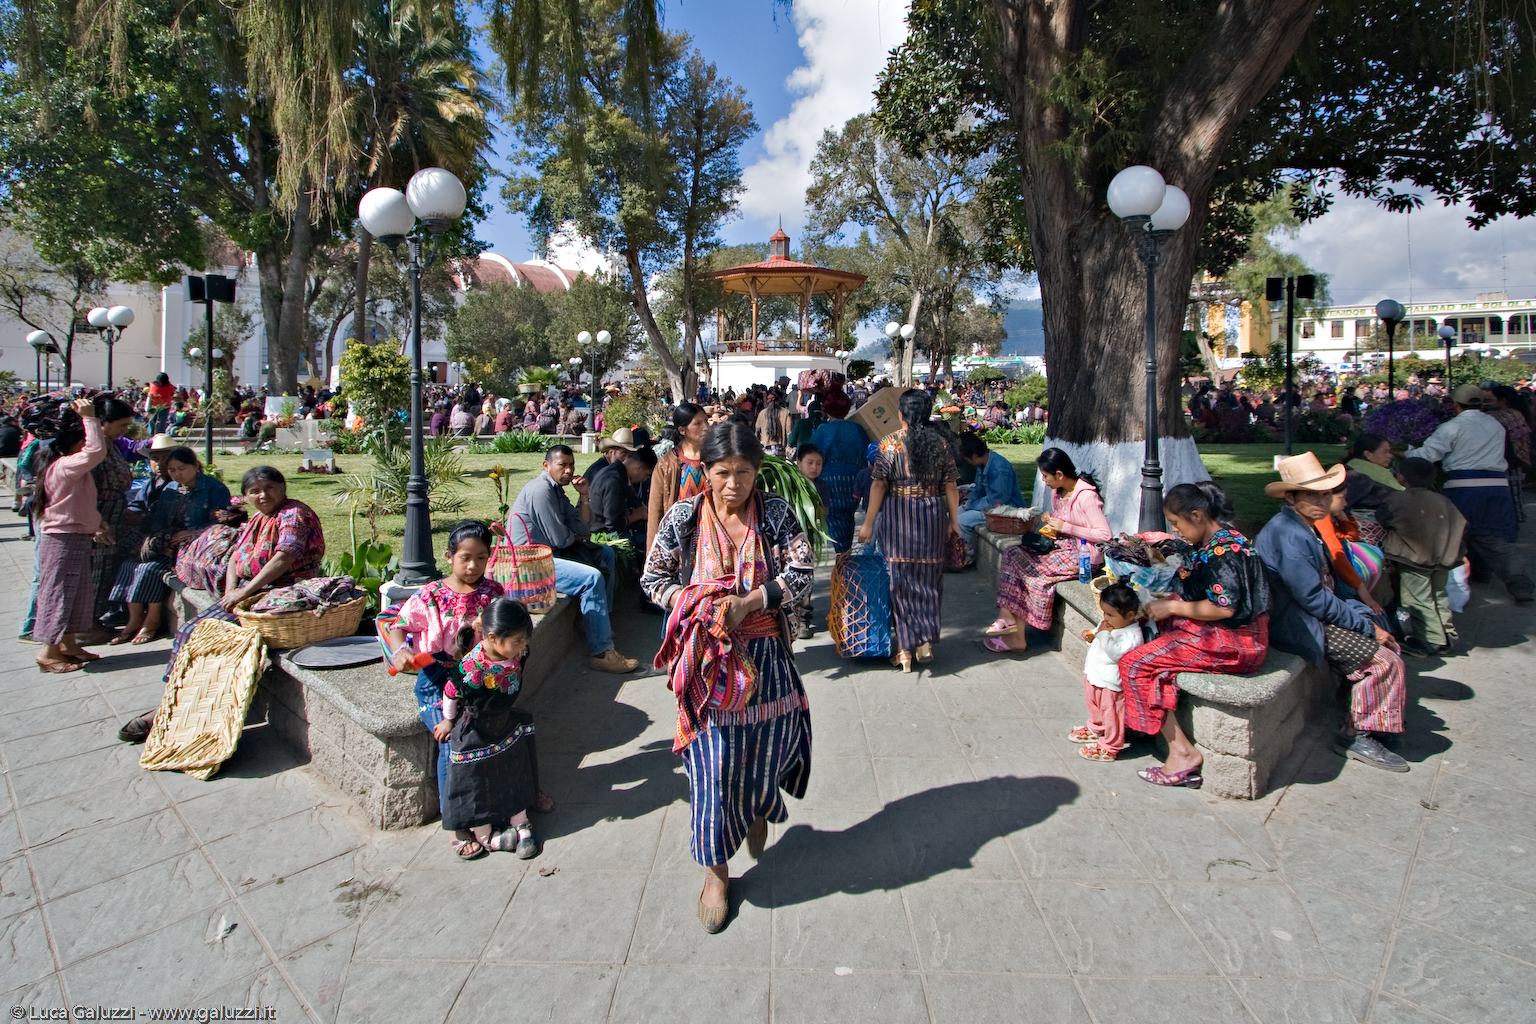 La città di Sololà si trova 600 m sopra il Lago de Atitlán. È sede di un importante mercato indigeno di maya Kaqchikel